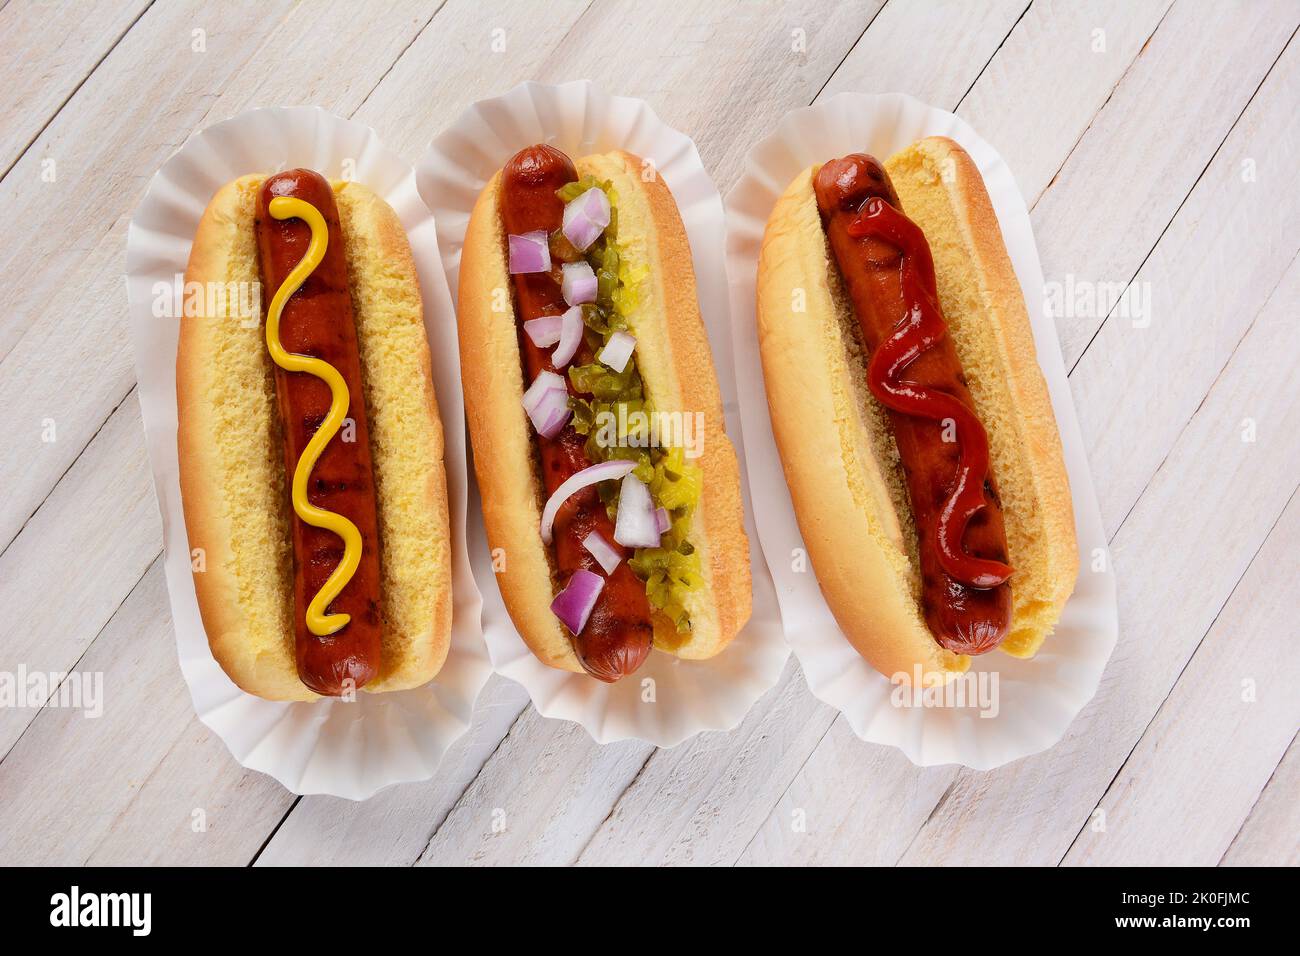 Draufsicht auf drei Hot Dogs auf einem Holztisch mit verschiedenen Gewürzen. Stockfoto